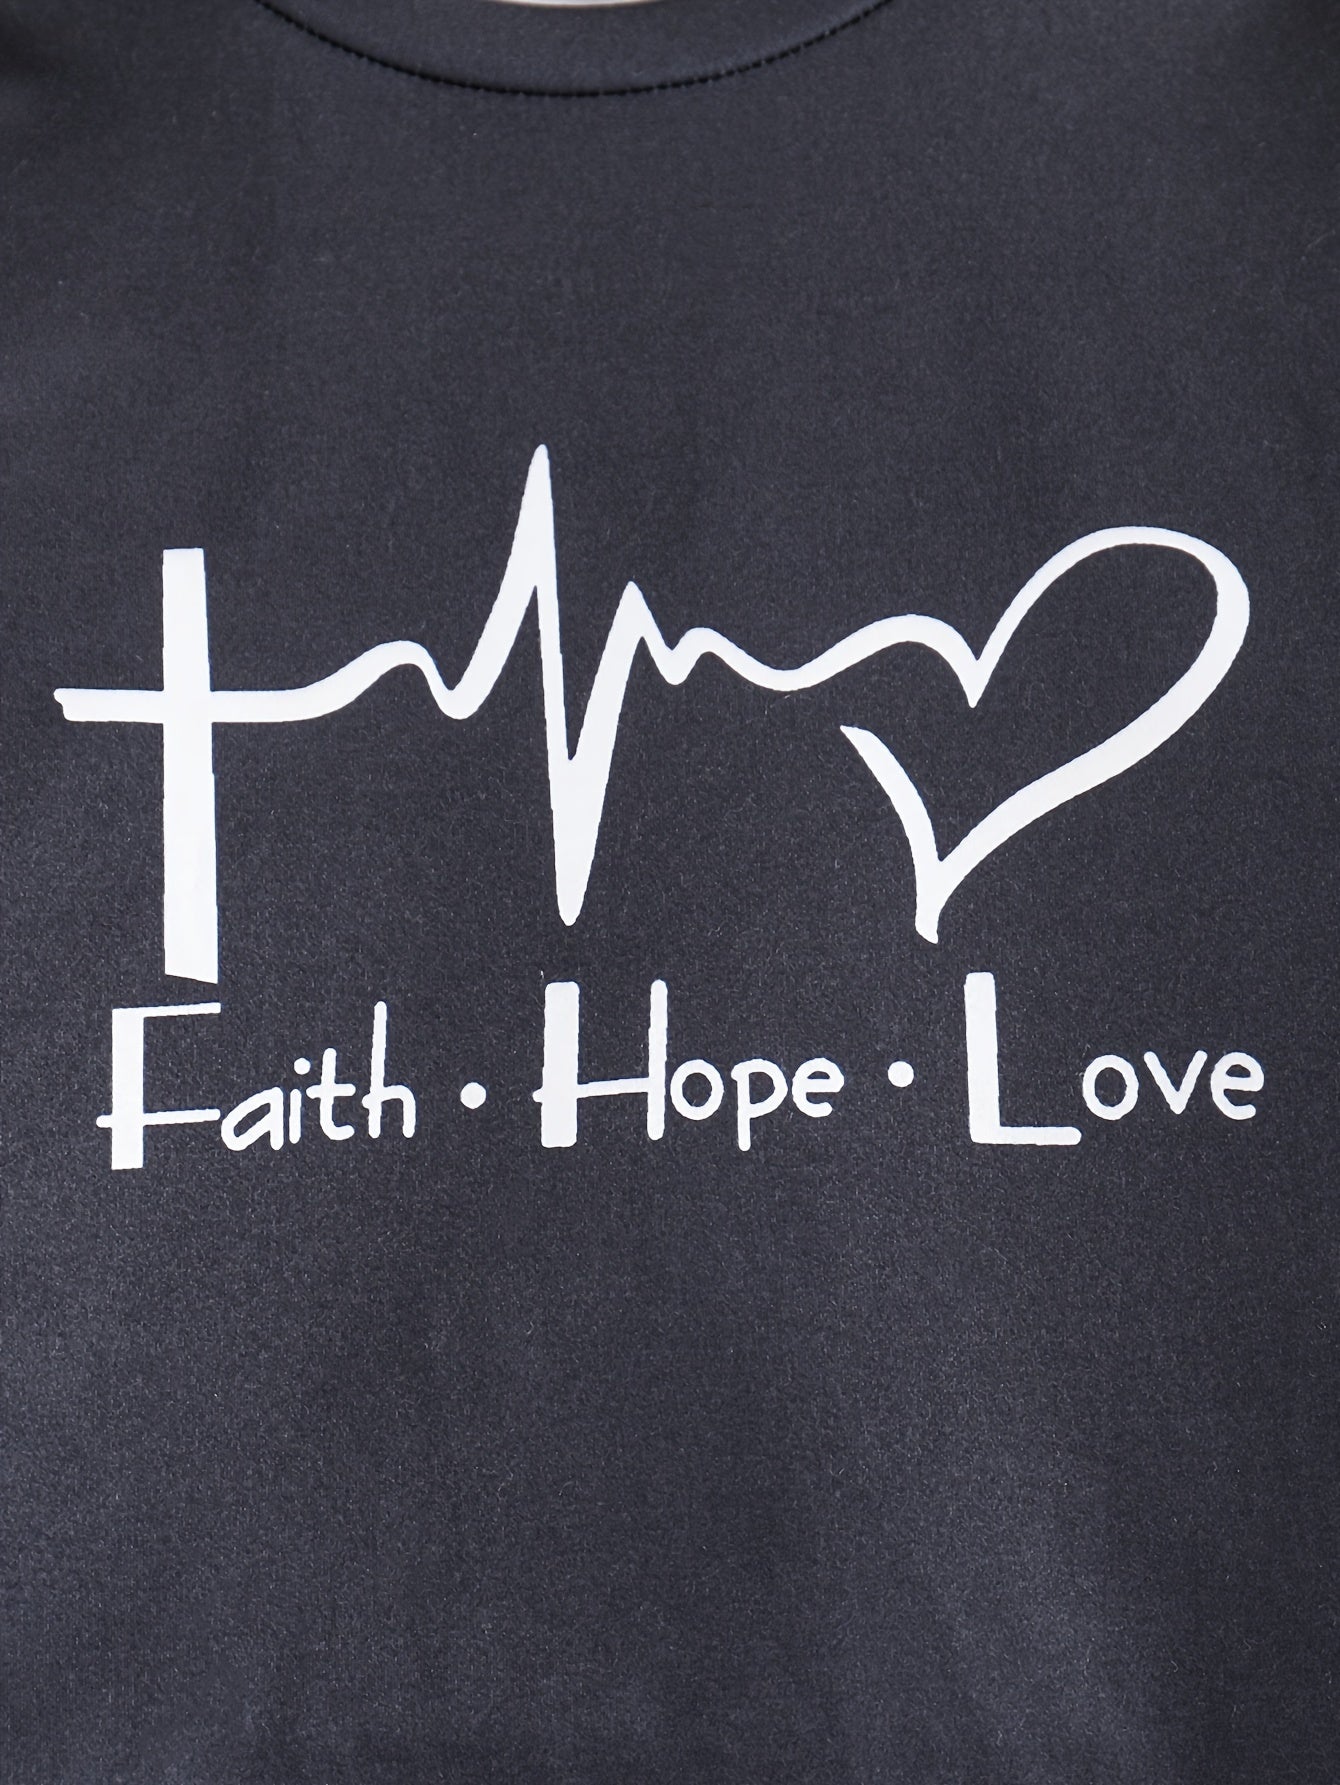 FAITH HOPE LOVE Youth Christian Casual Outfit claimedbygoddesigns